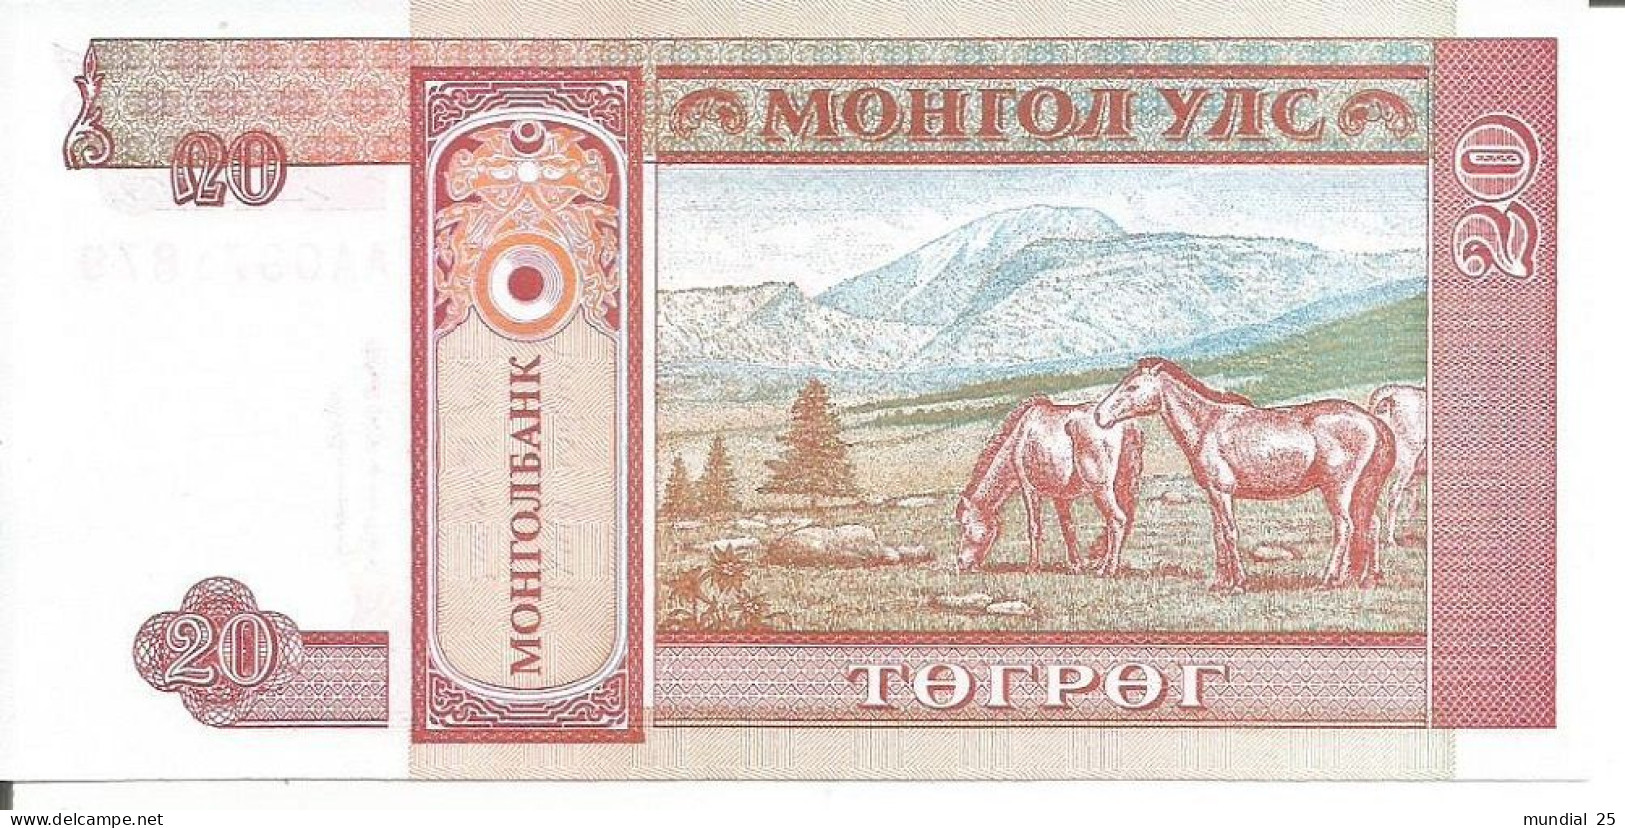 MONGOLIA 20 TUGRIK N/D (1993) - Mongolei